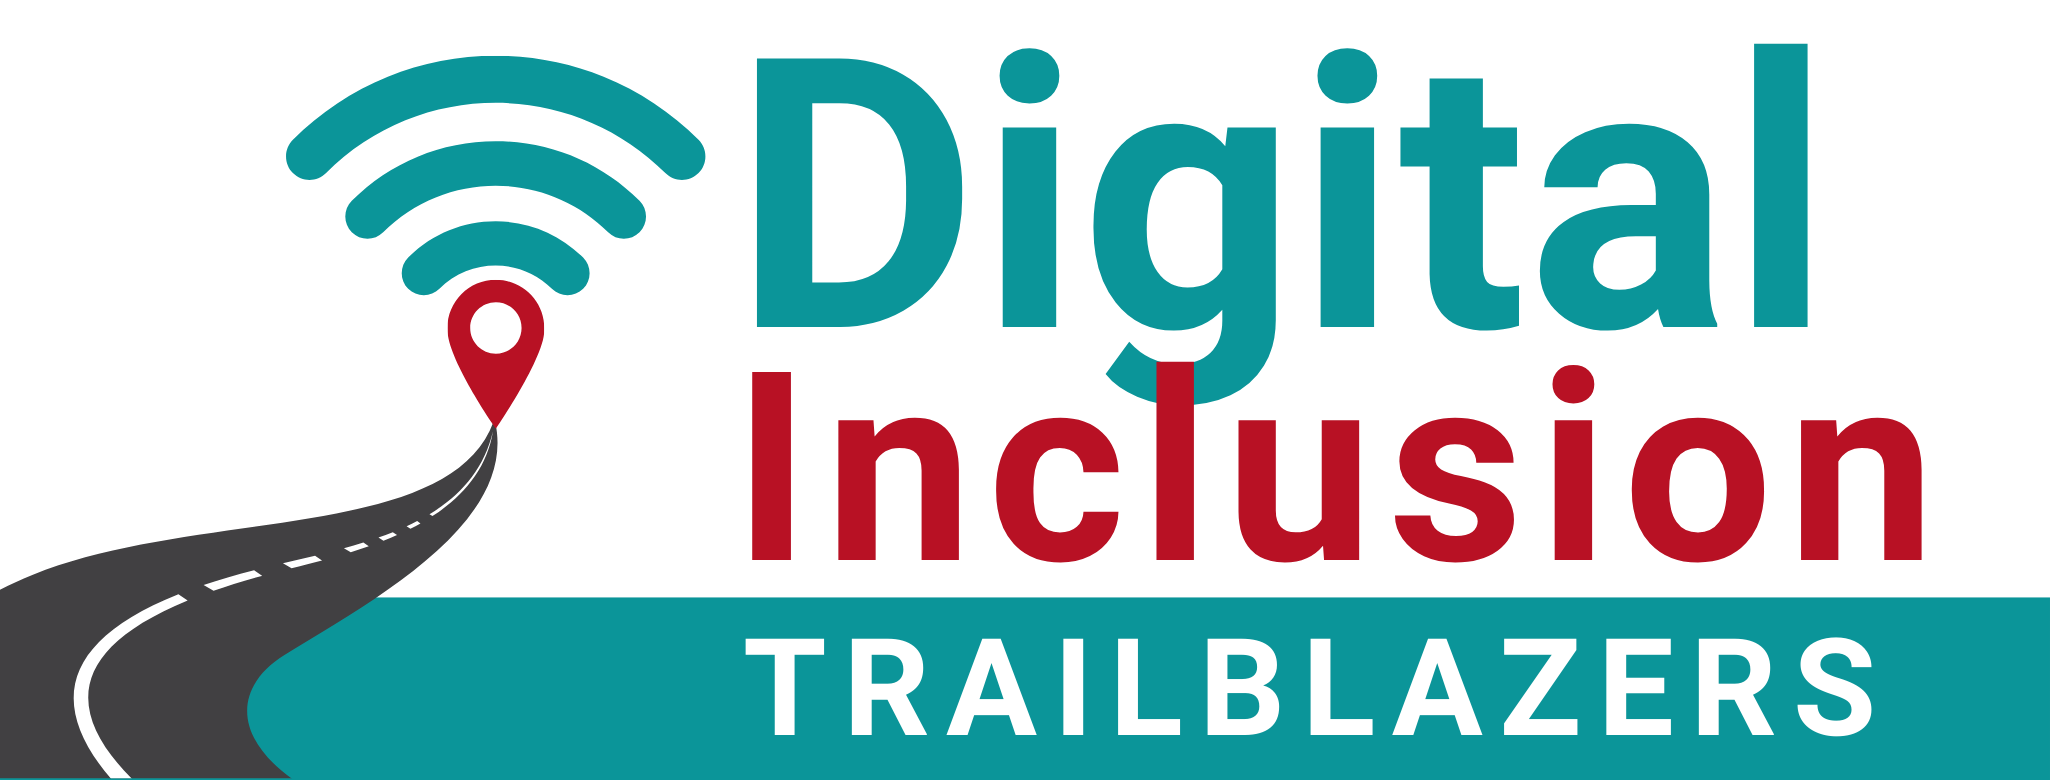 Digital Inclusion Trailblazer